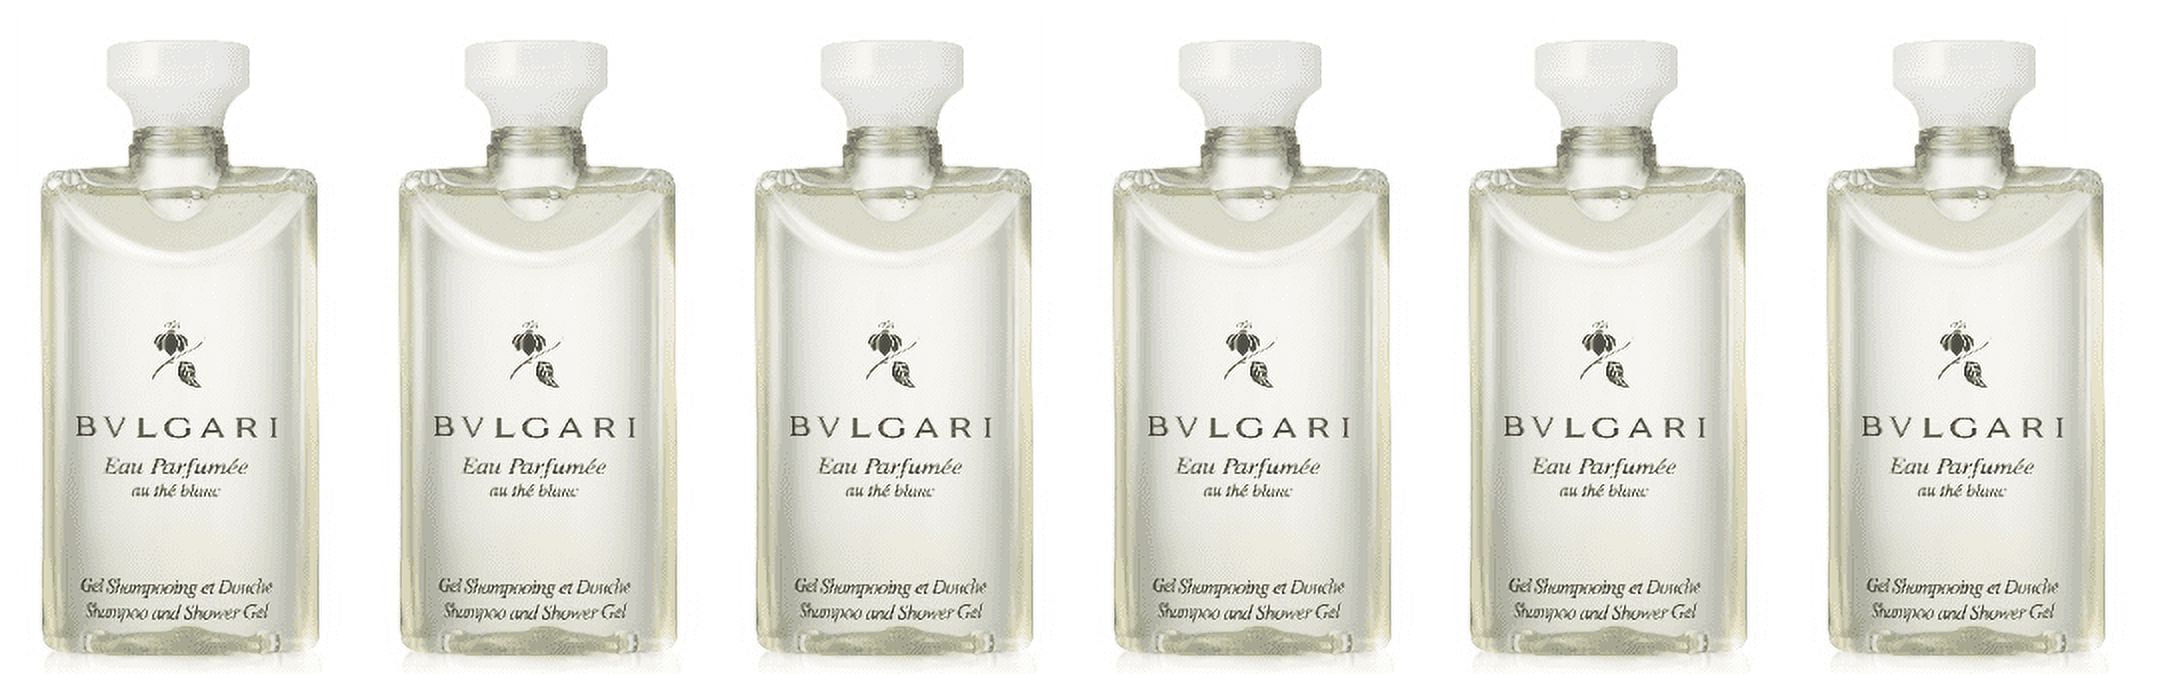 Bvlgari AU The Vert (Green Tea) Shampoo and Shower Gel Set of 3, 2.5 Fluid Ounce Bottles